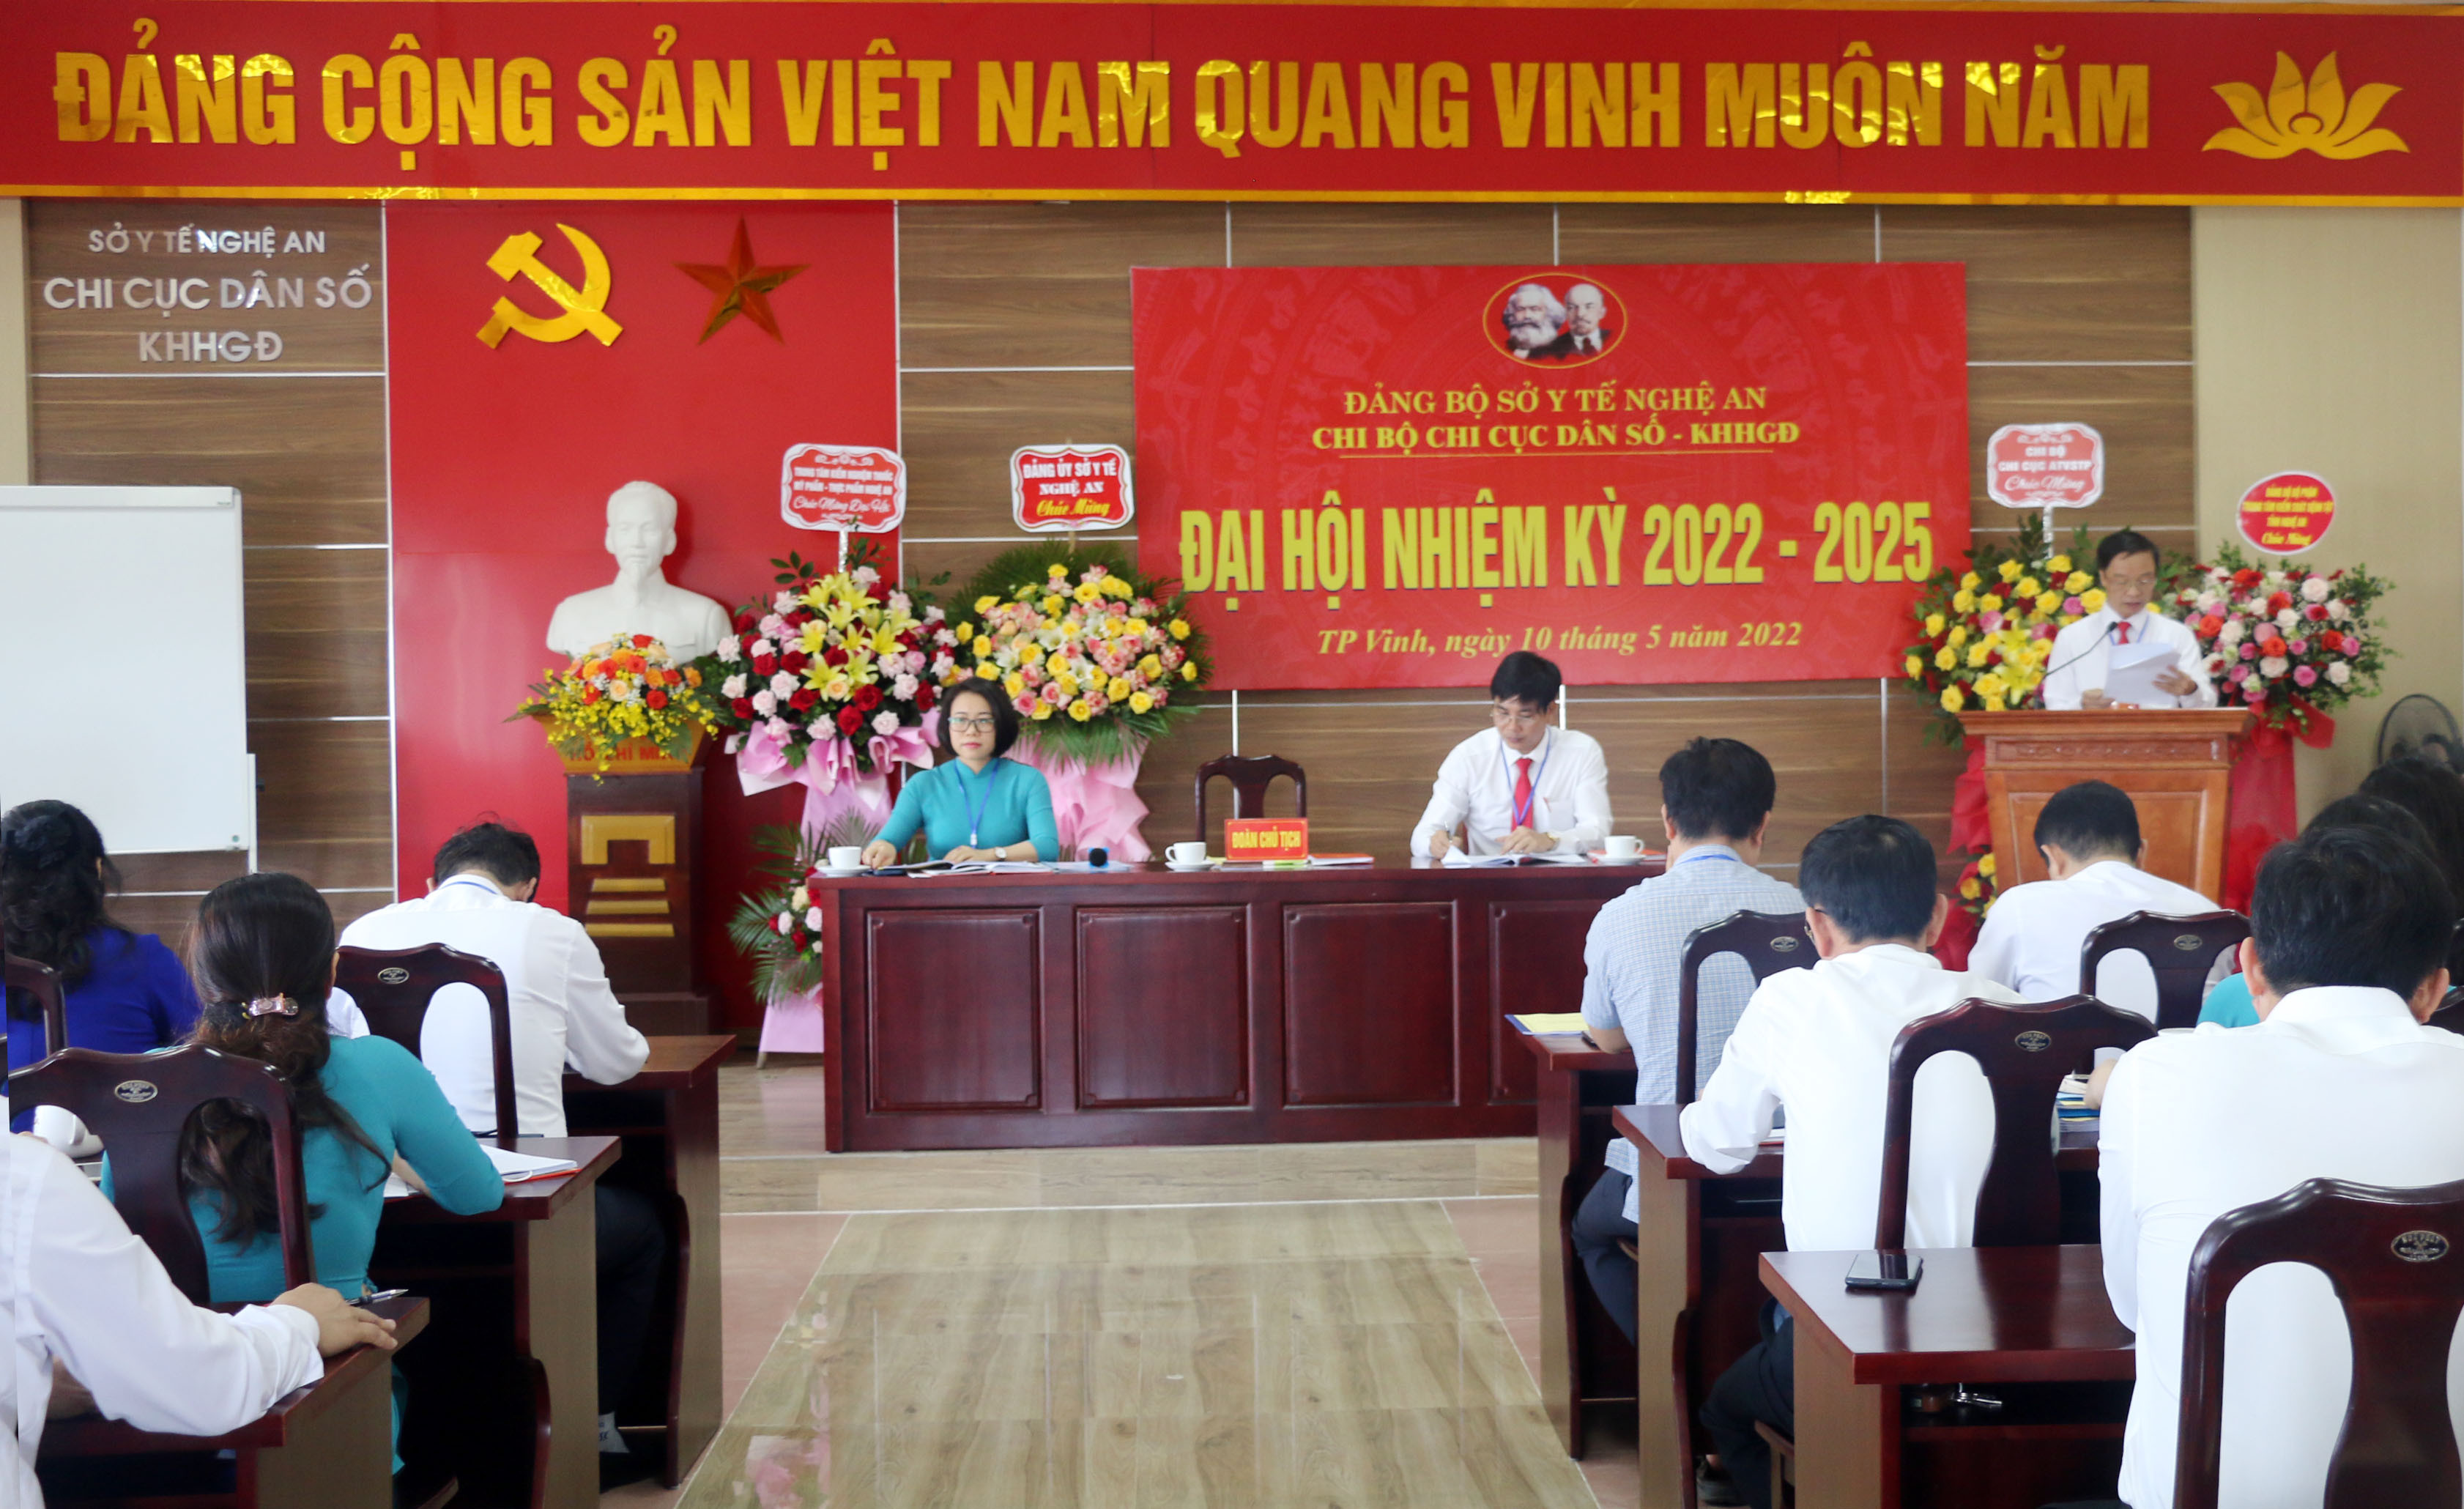 Đồng chí Nguyễn Bá Tân - Chi cục trưởng Chi cục Dân sô - KHHGĐ báo cáo kết quả của chi bộ nhiệm kỳ 2020 - 2022. Ảnh: MH